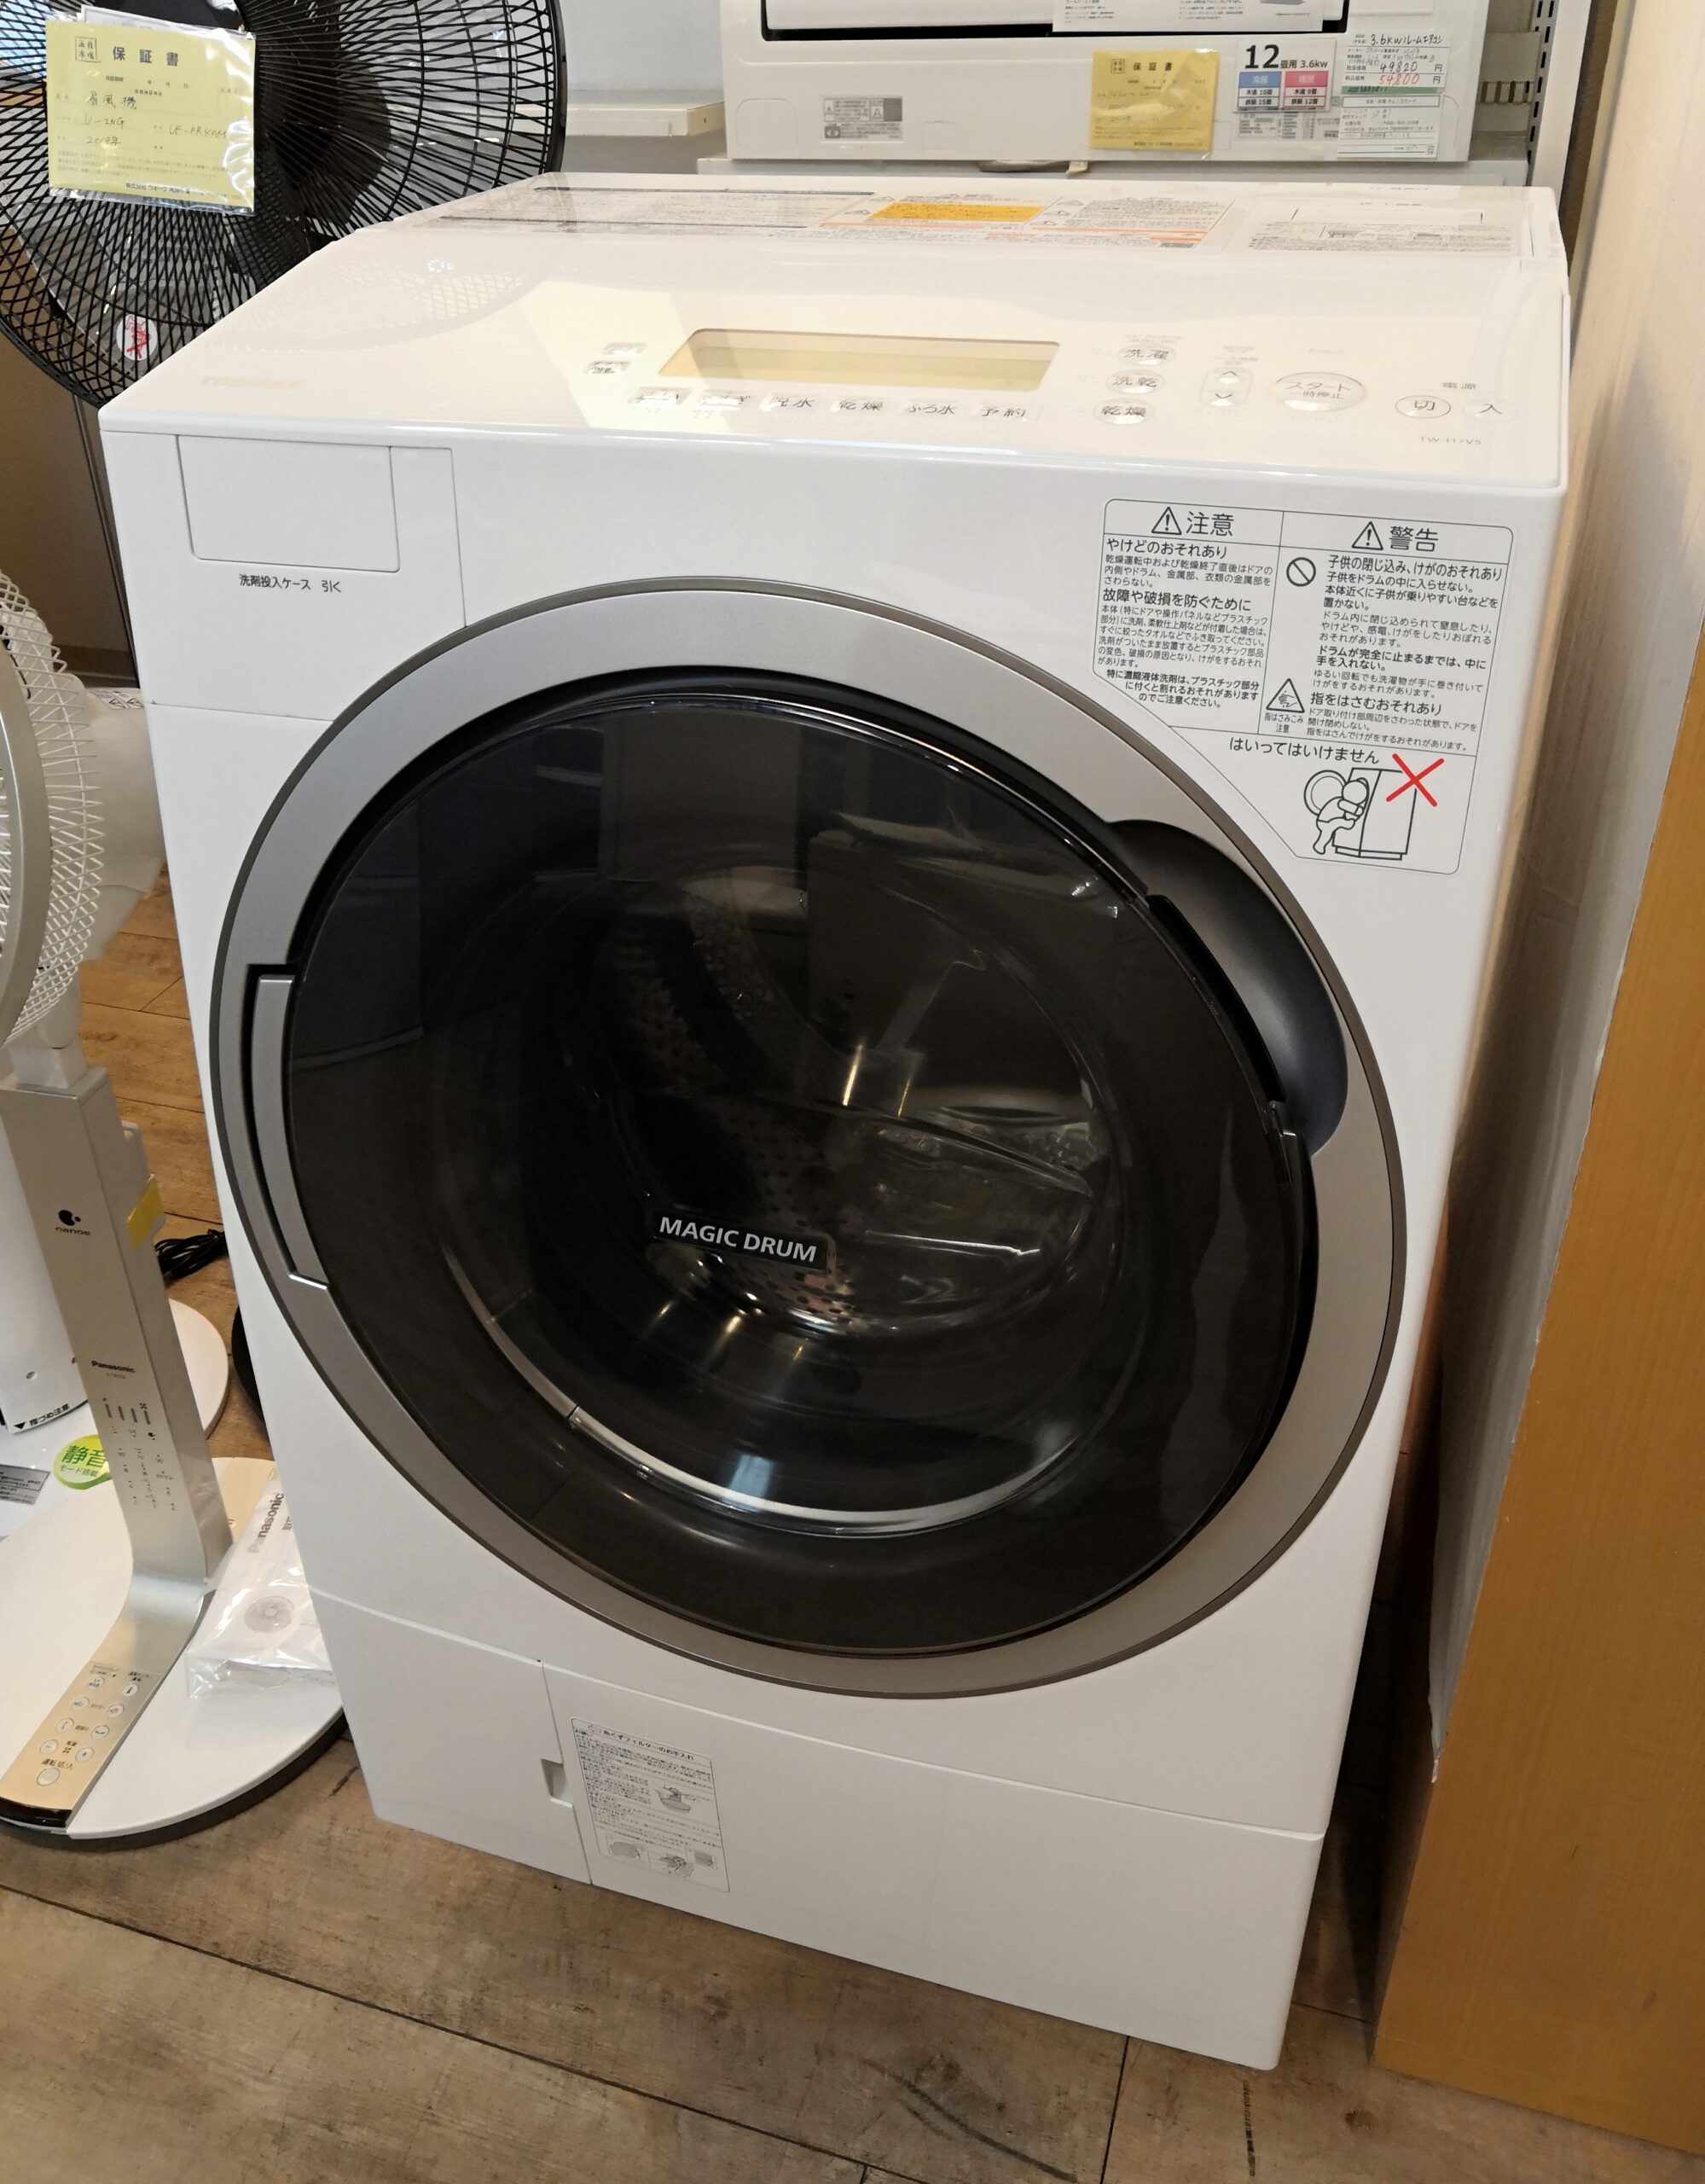 TOSHIBA】 東芝 電気 洗濯 乾燥機 ドラム式 ザブーン 左開き Ag+ TW 